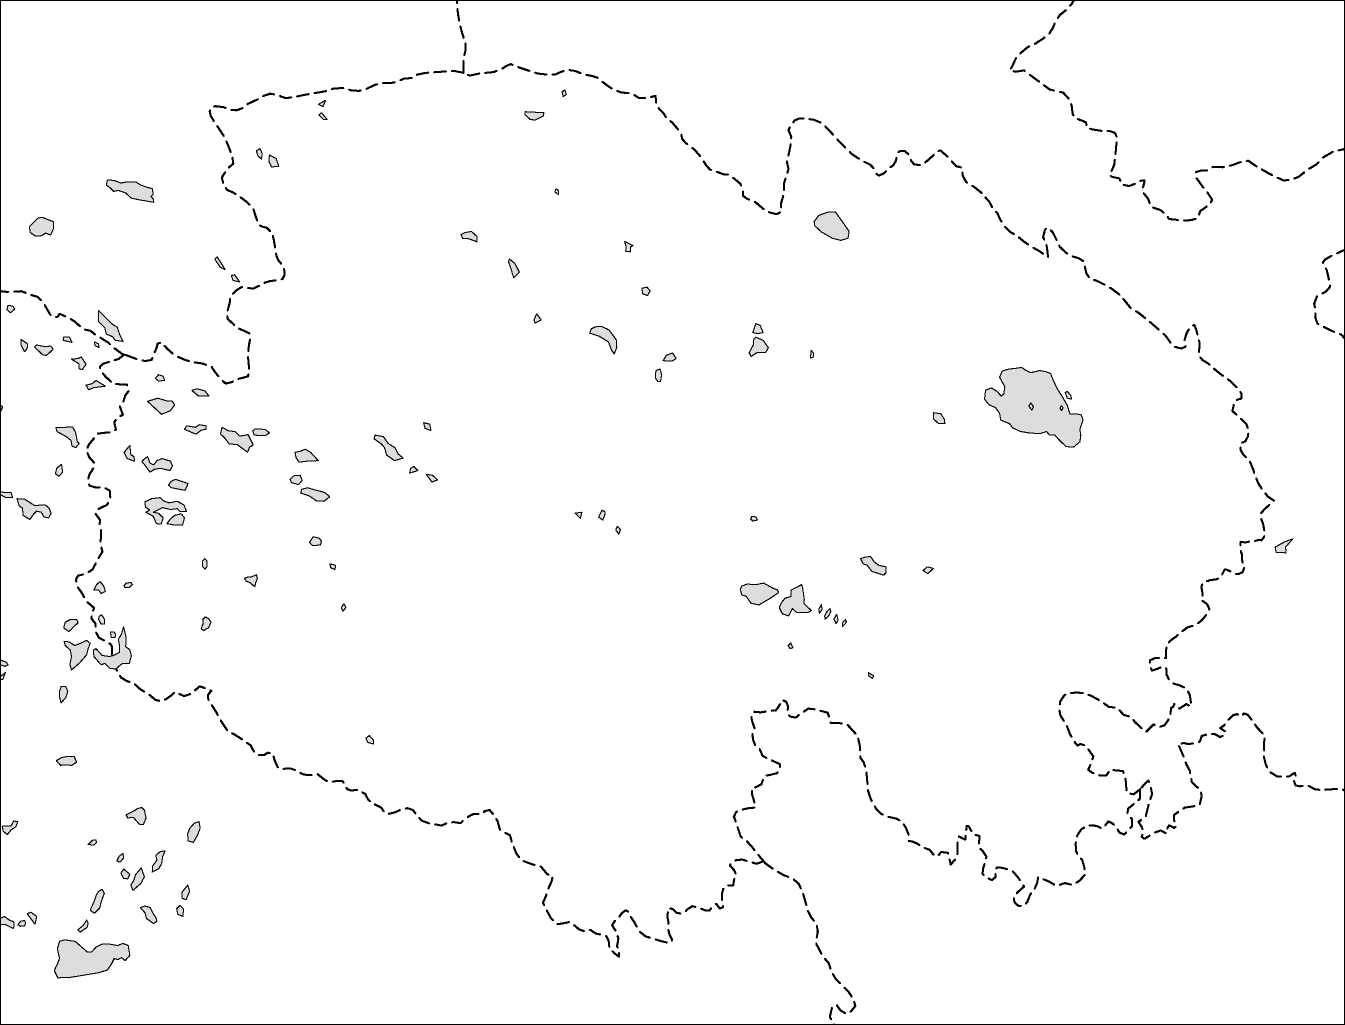 青海省白地図のフリーデータの画像